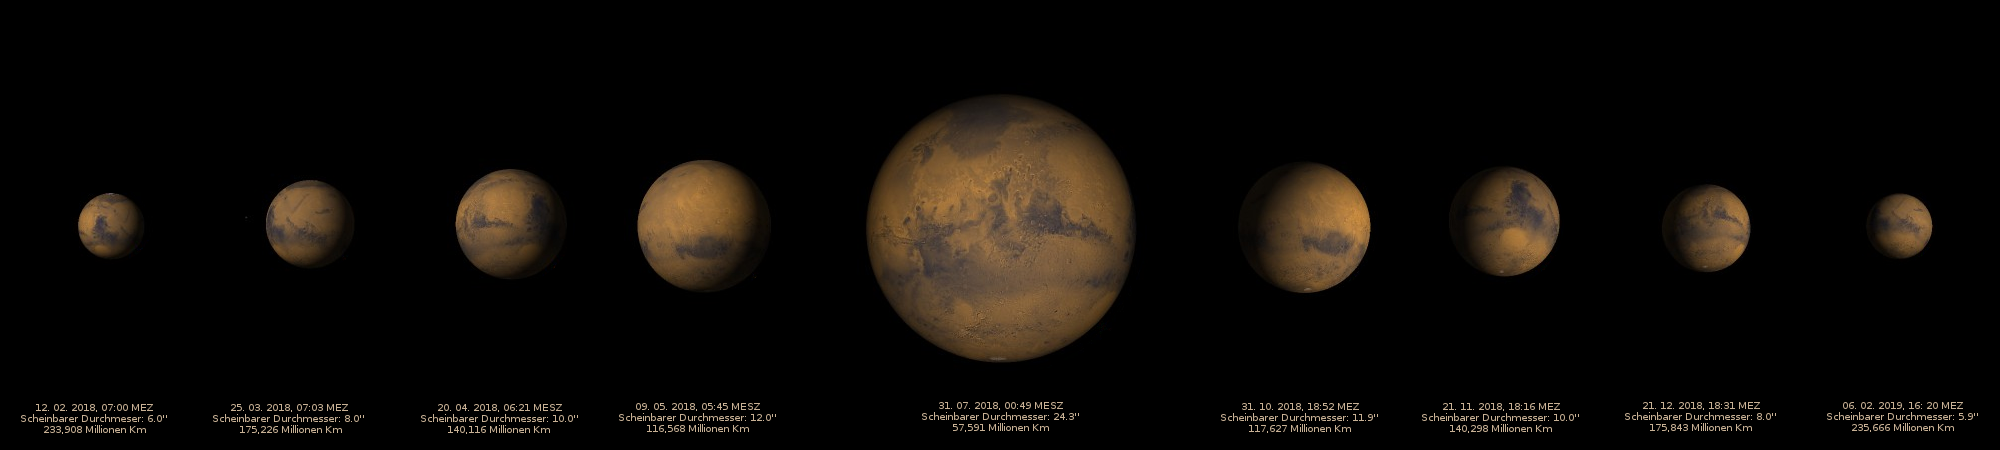 Marsopposition 2018 - Der scheinbare Durchmesser des Marsscheibchens im Vergleich